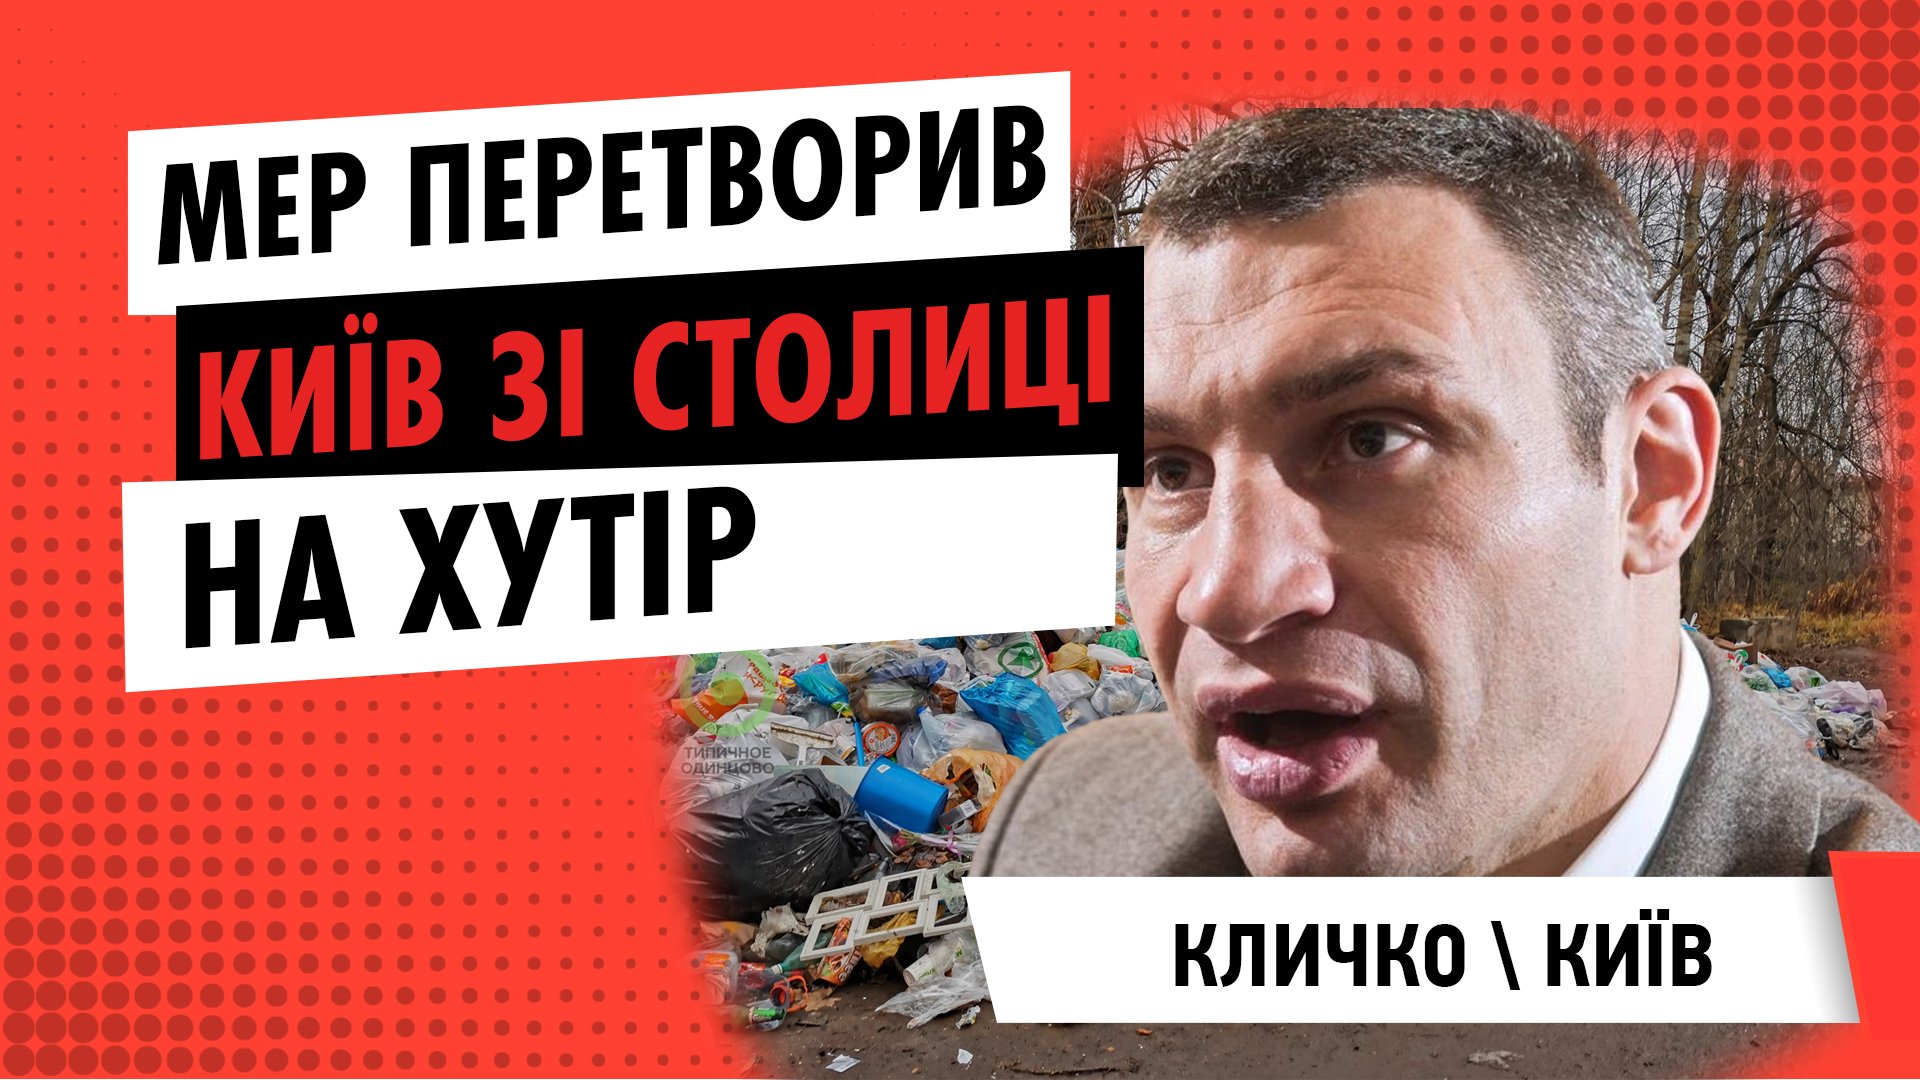 Мер Кличко перетворив Київ зі столиці на хутір | ЦЕНТР